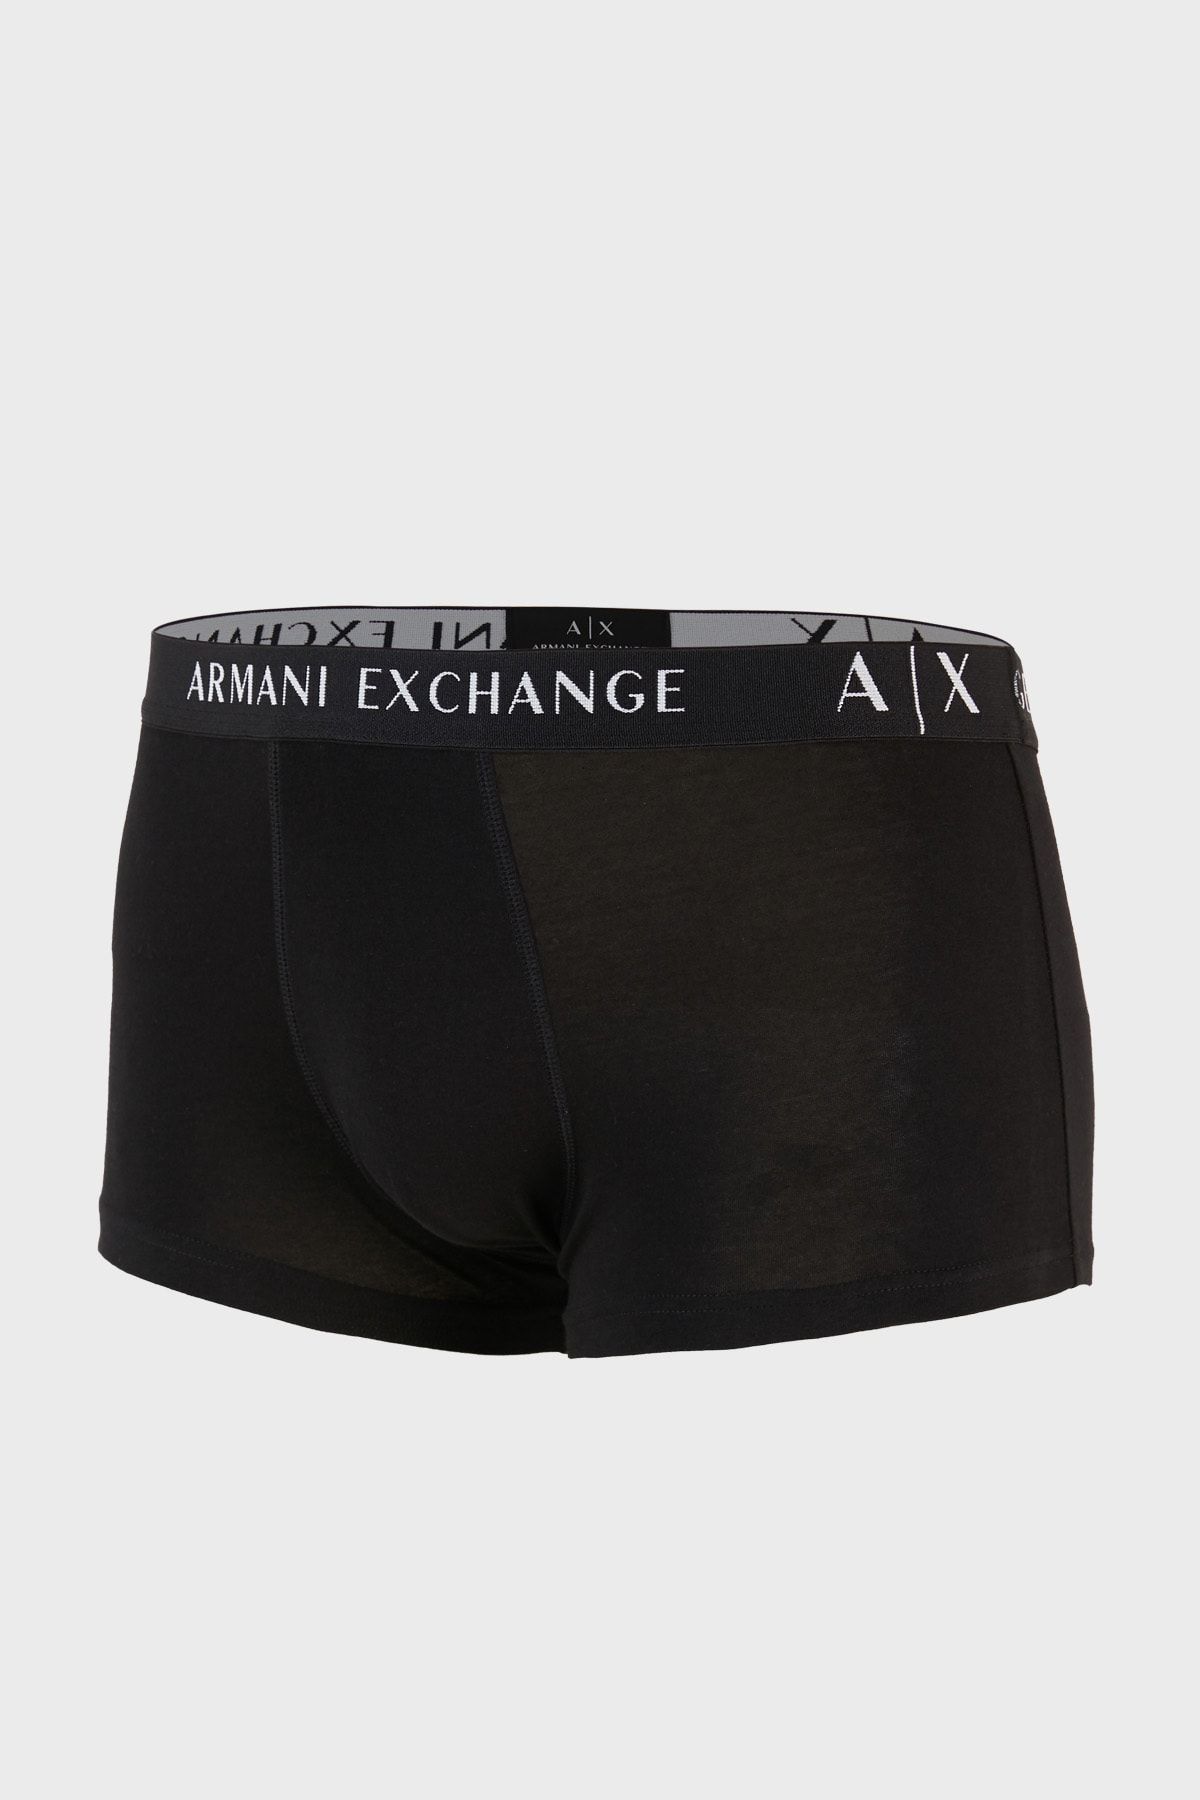 Armani Exchange Cotton 2 Pack Boxer Men's Boxer 957027 Cc282 42520